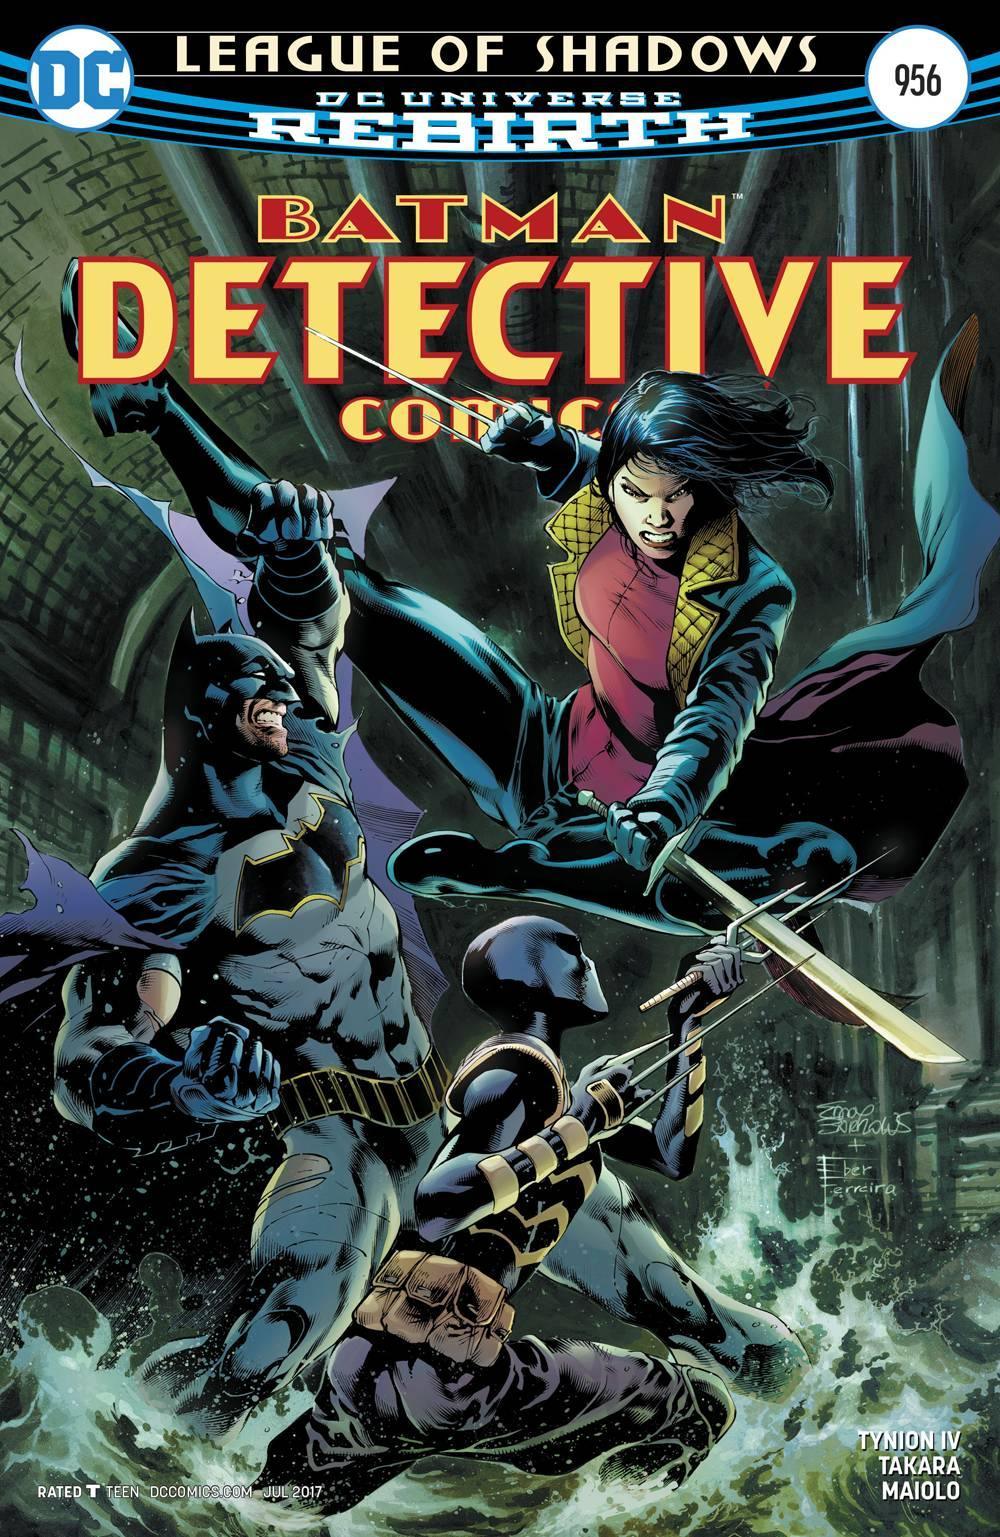 DETECTIVE COMICS VOL 2 #956 - Kings Comics